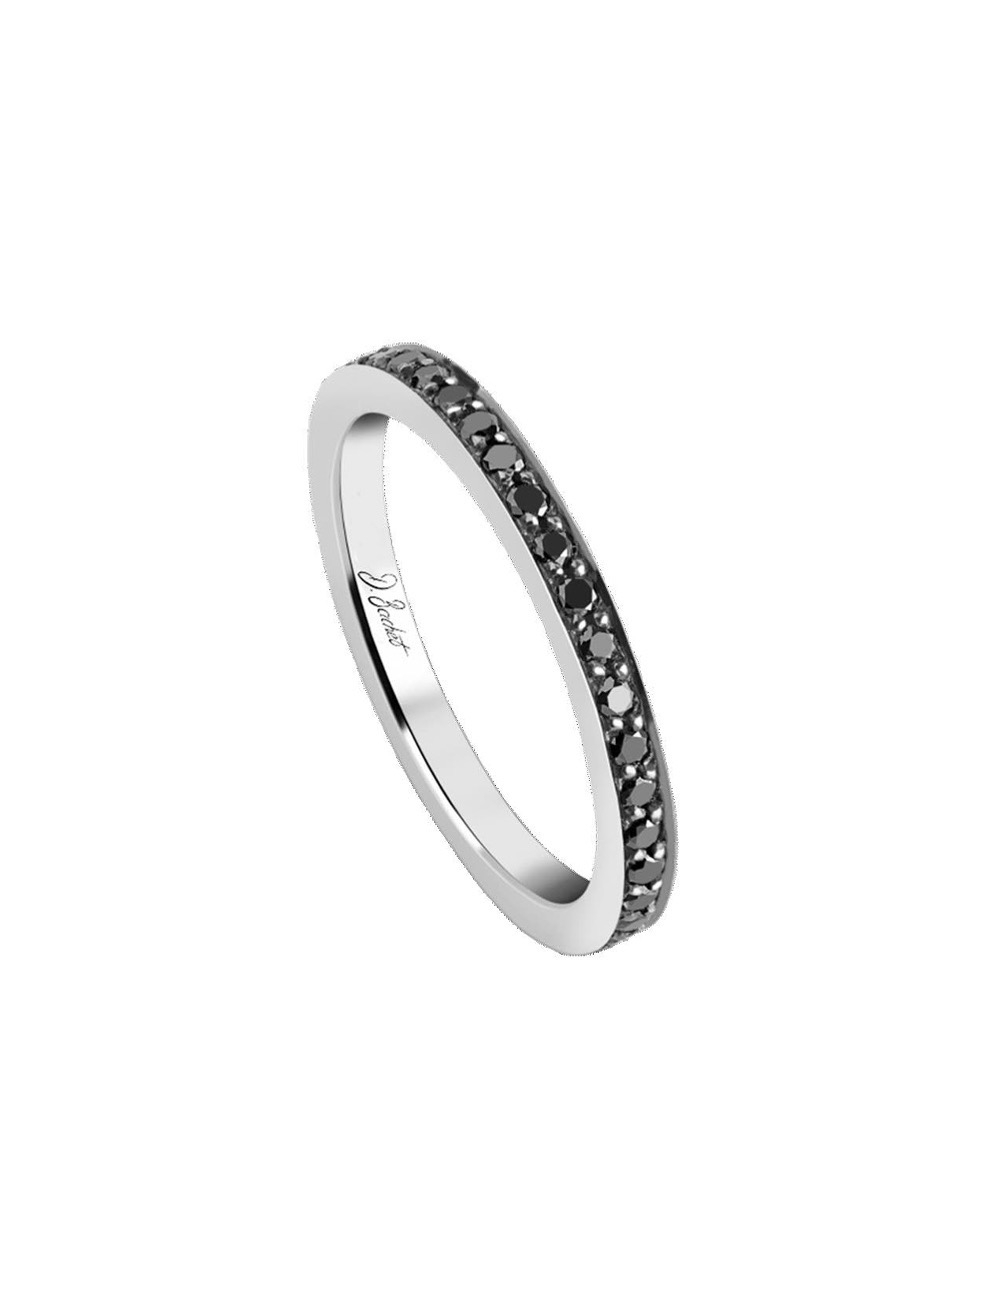 Alliance femme platine ornée de diamants noirs scintillants sur tout le tour de l'anneau, reflétant élégamment la lumière.